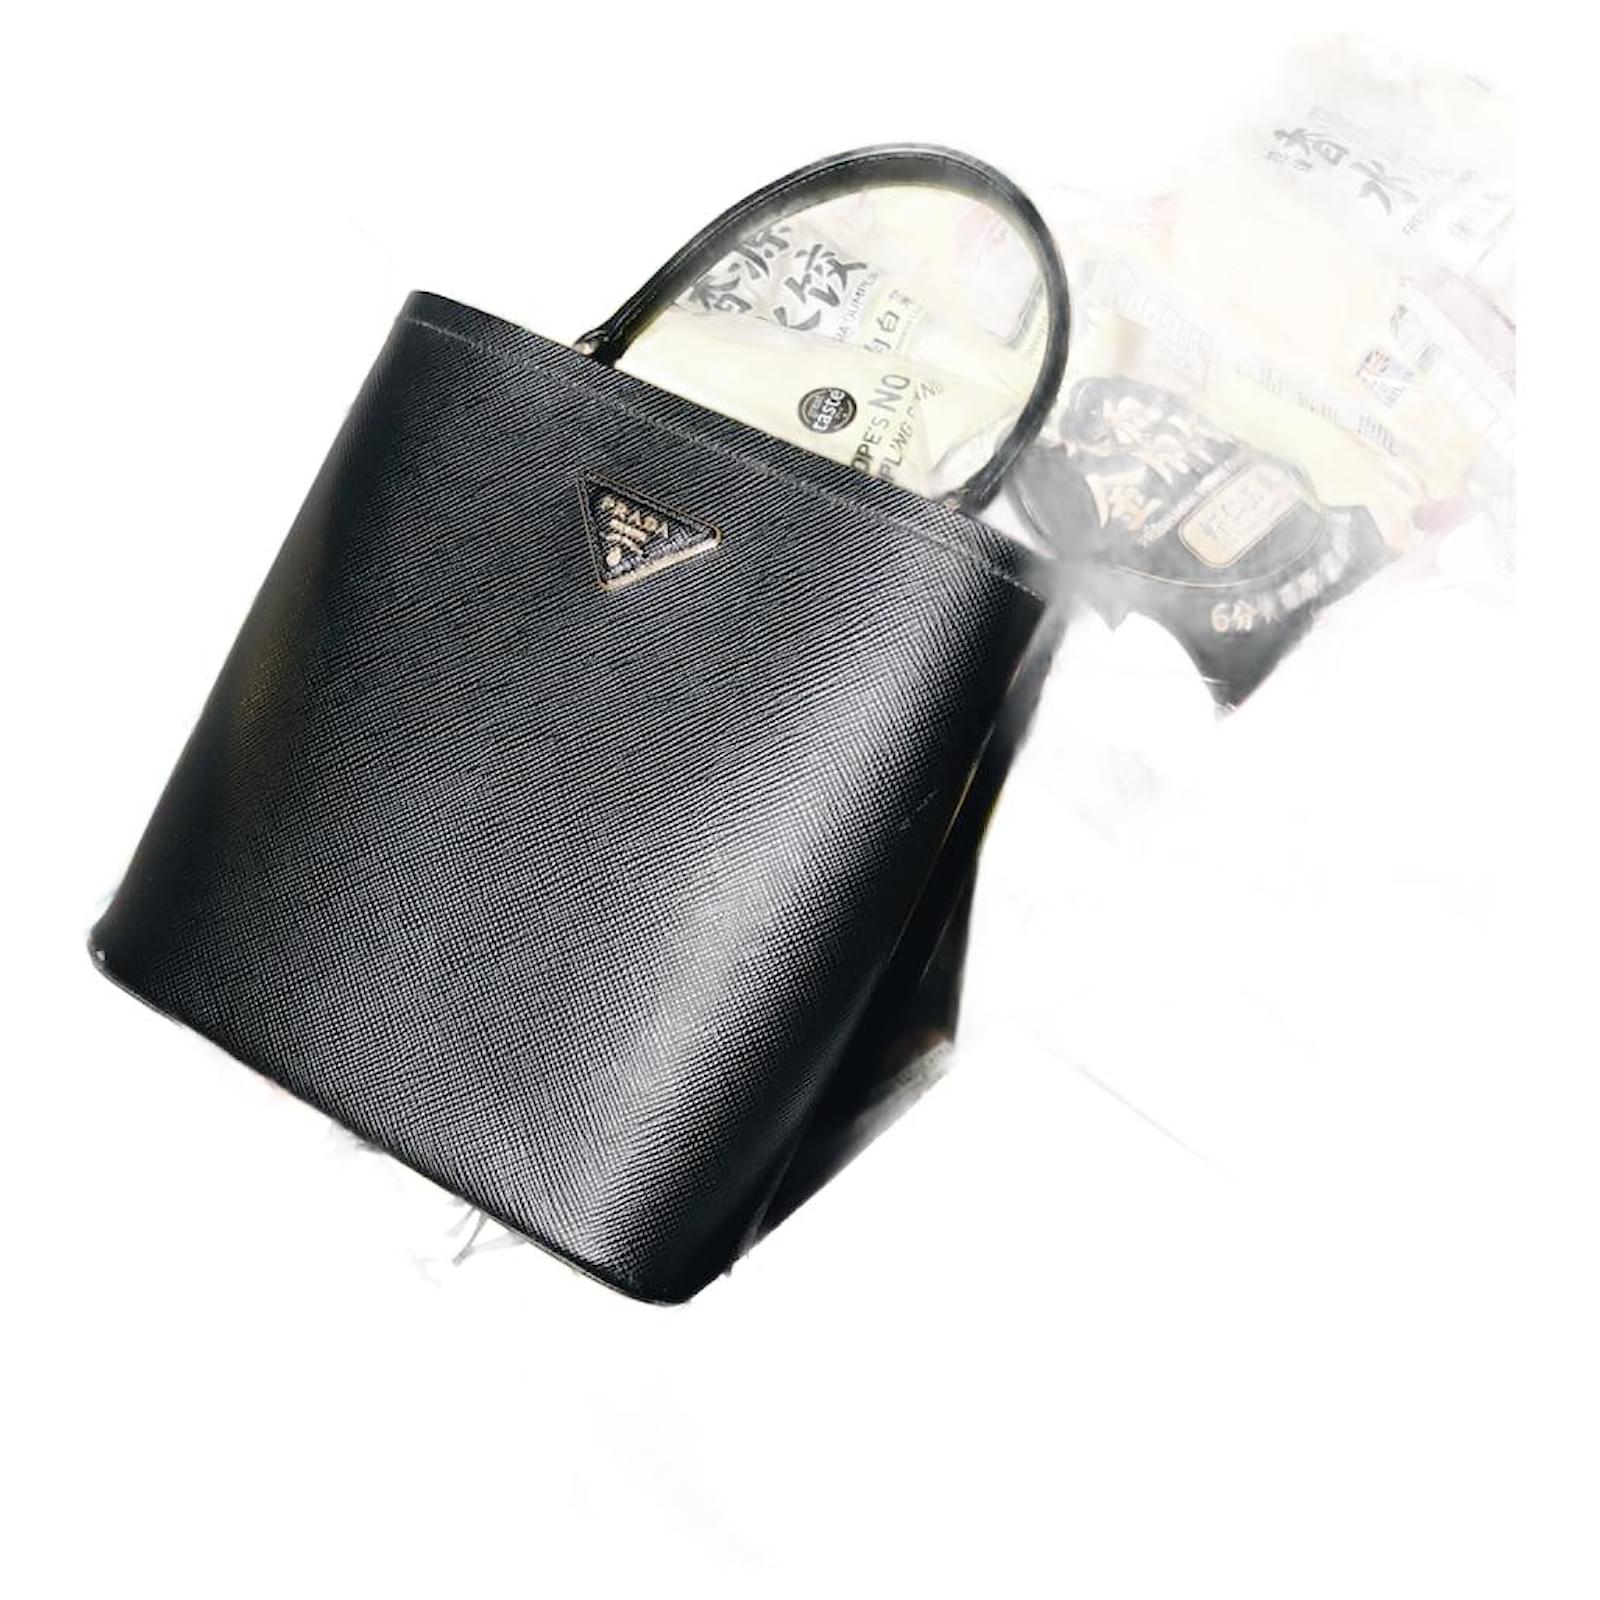 Prada Panier Saffiano Leather Small Bag